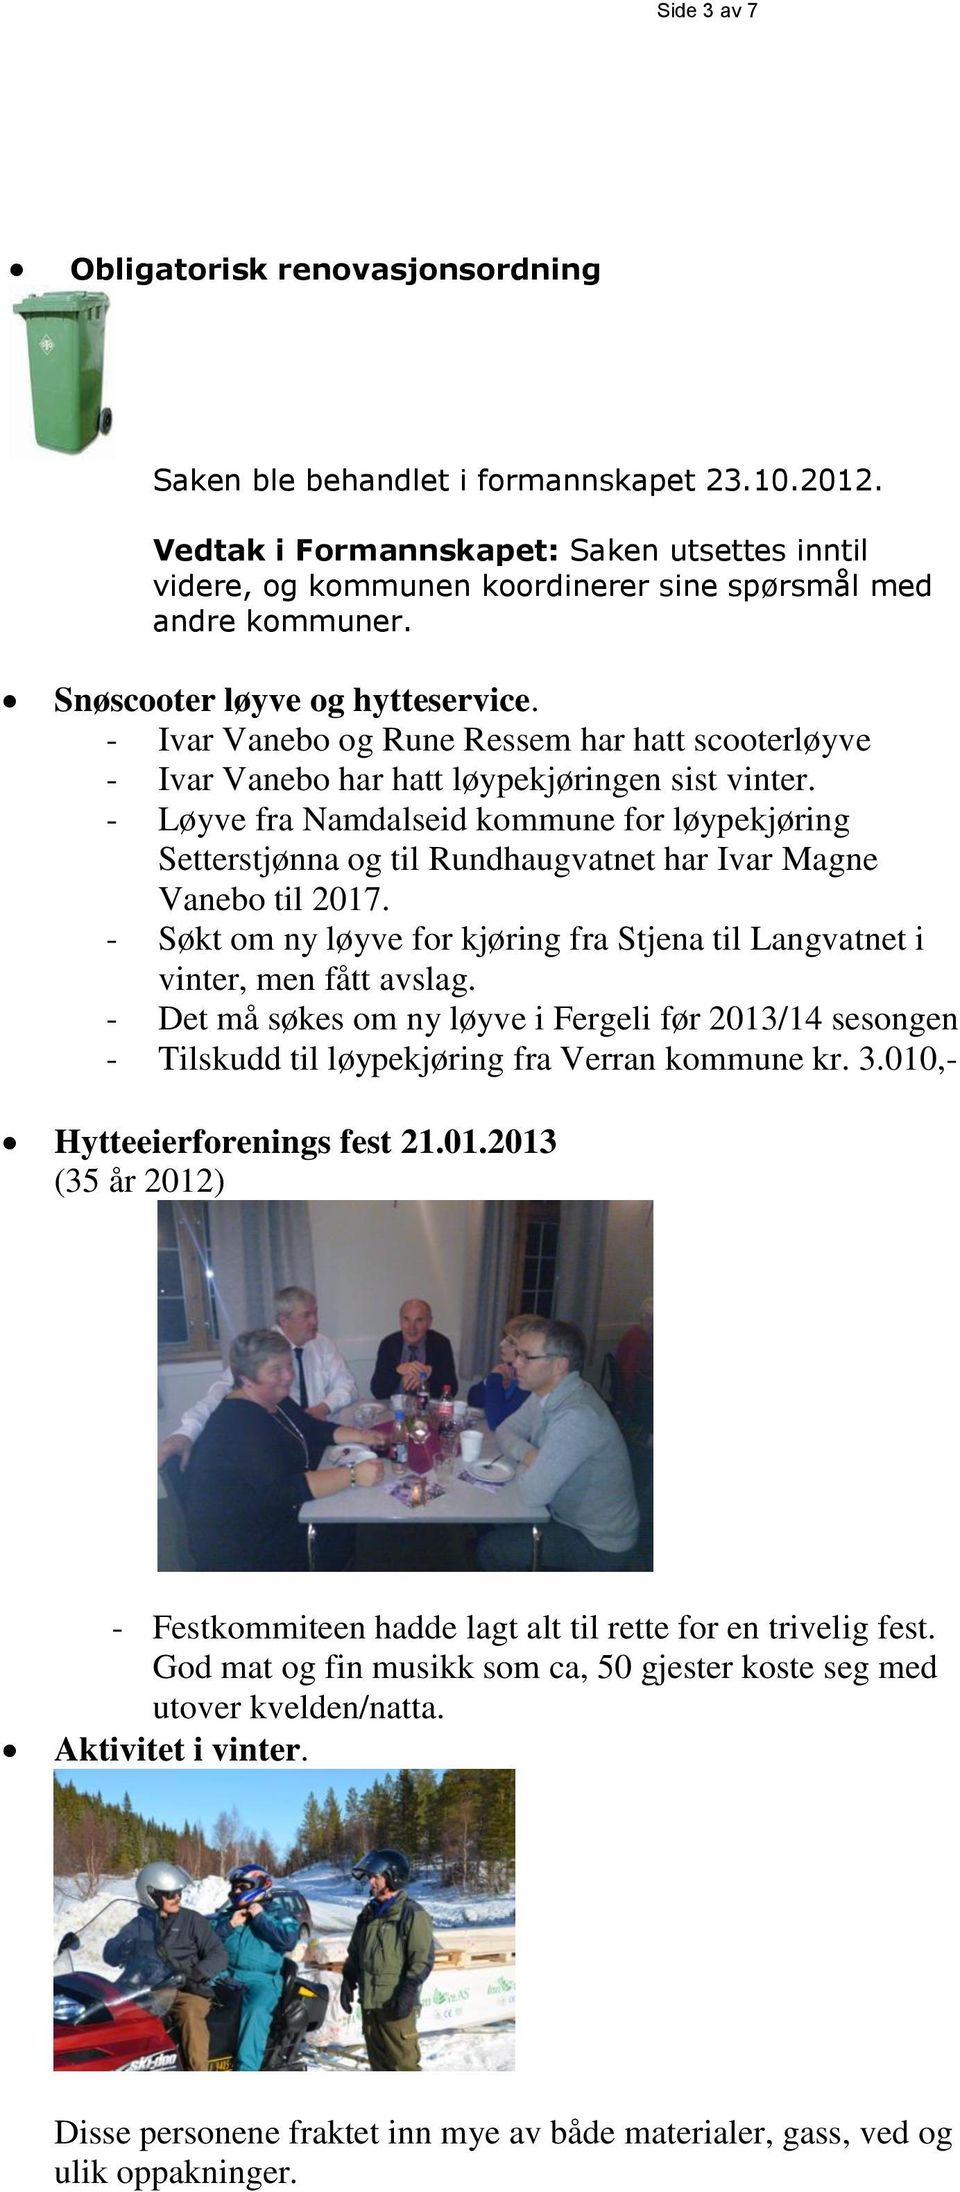 - Ivar Vanebo og Rune Ressem har hatt scooterløyve - Ivar Vanebo har hatt løypekjøringen sist vinter.